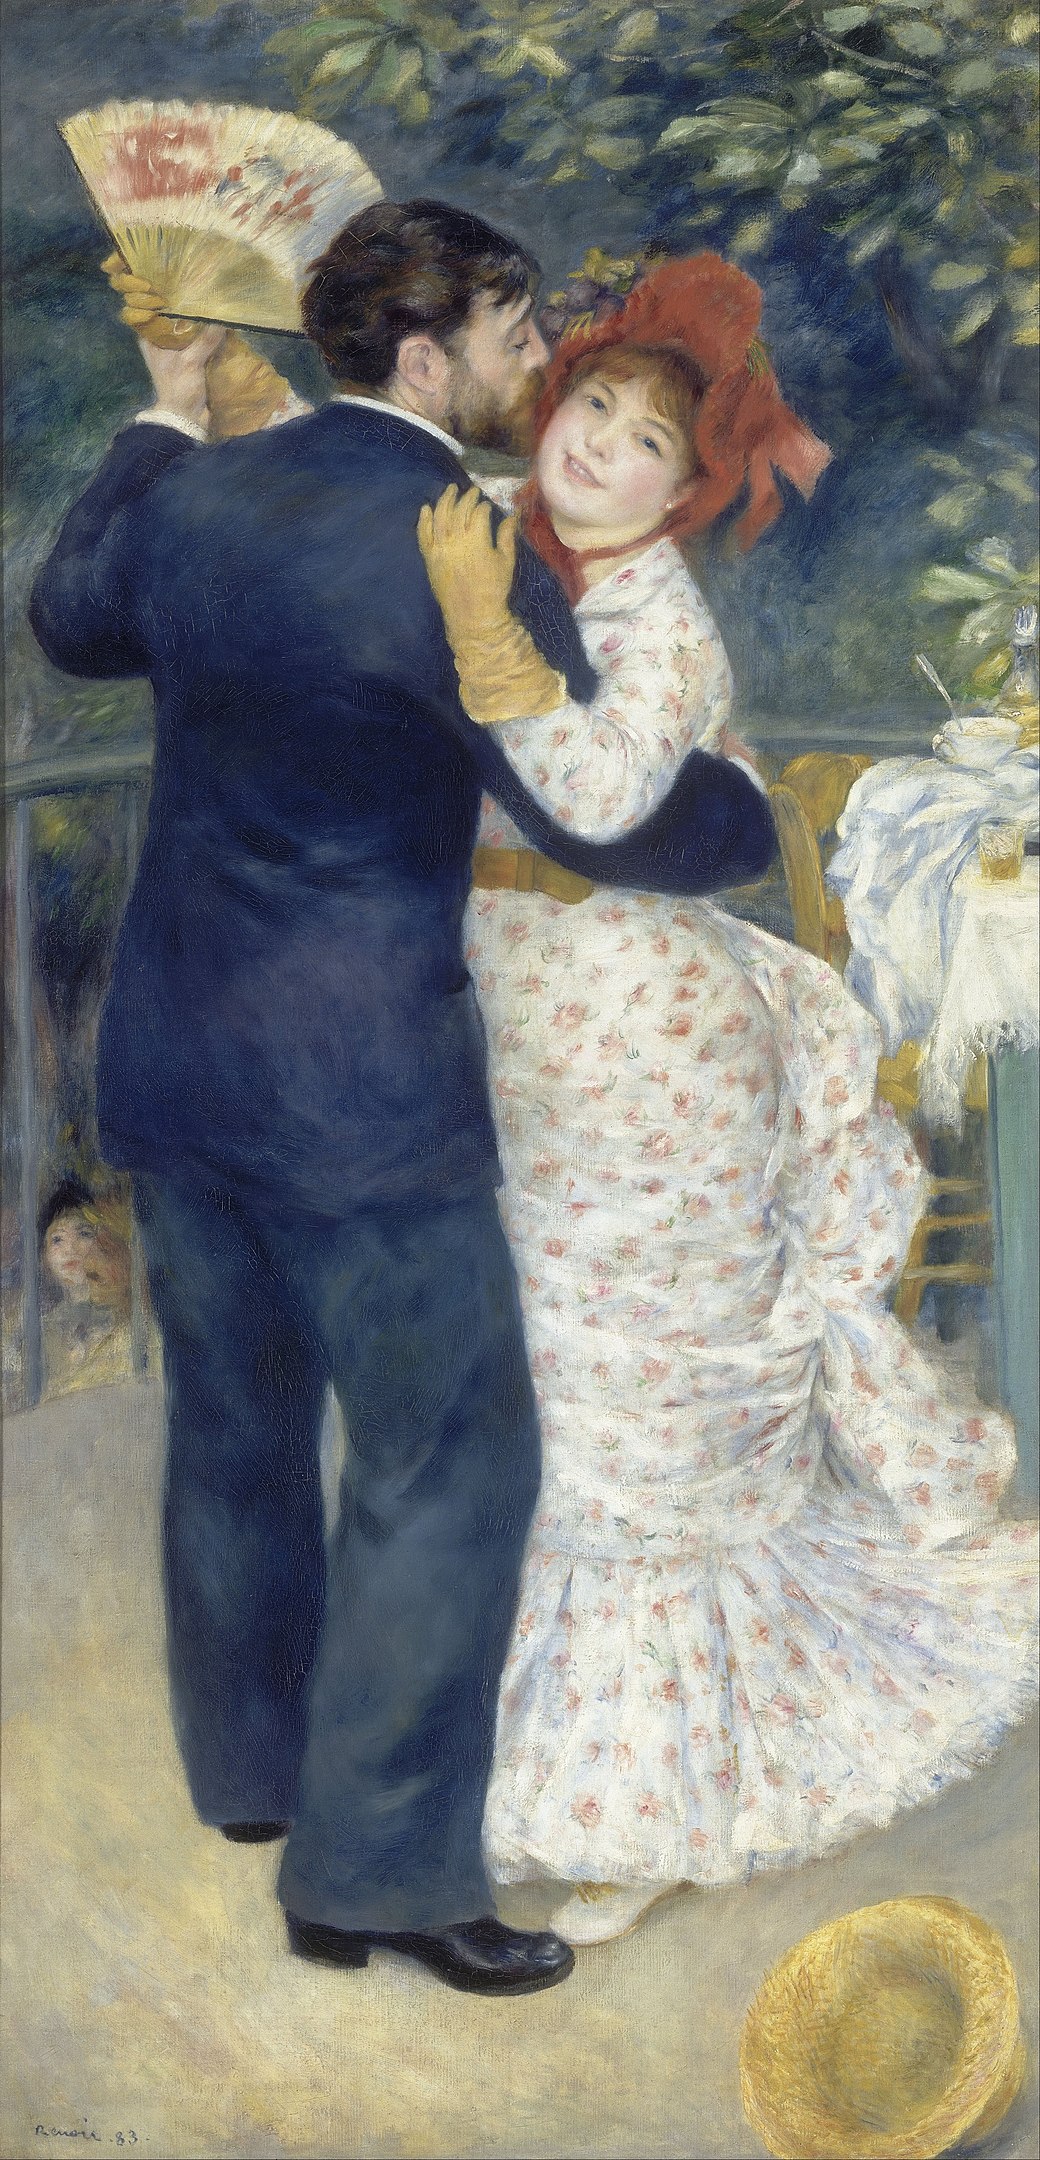 Danse à la ville by Pierre-Auguste Renoir - 1883 - 180 x 90 cm Musée d'Orsay